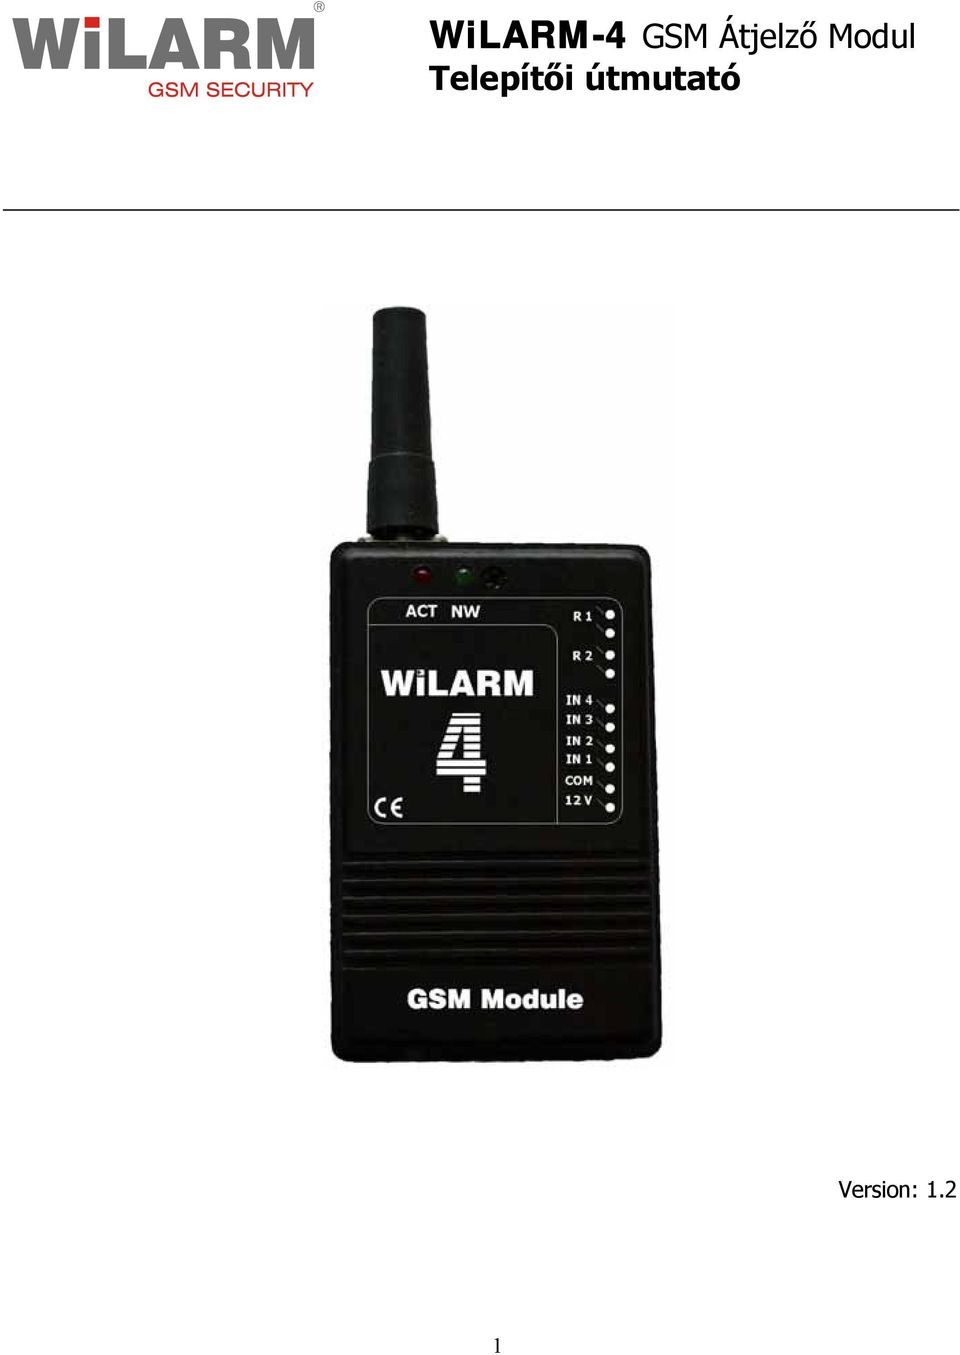 WiLARM-4 GSM Átjelző Modul Telepítői útmutató - PDF Ingyenes letöltés